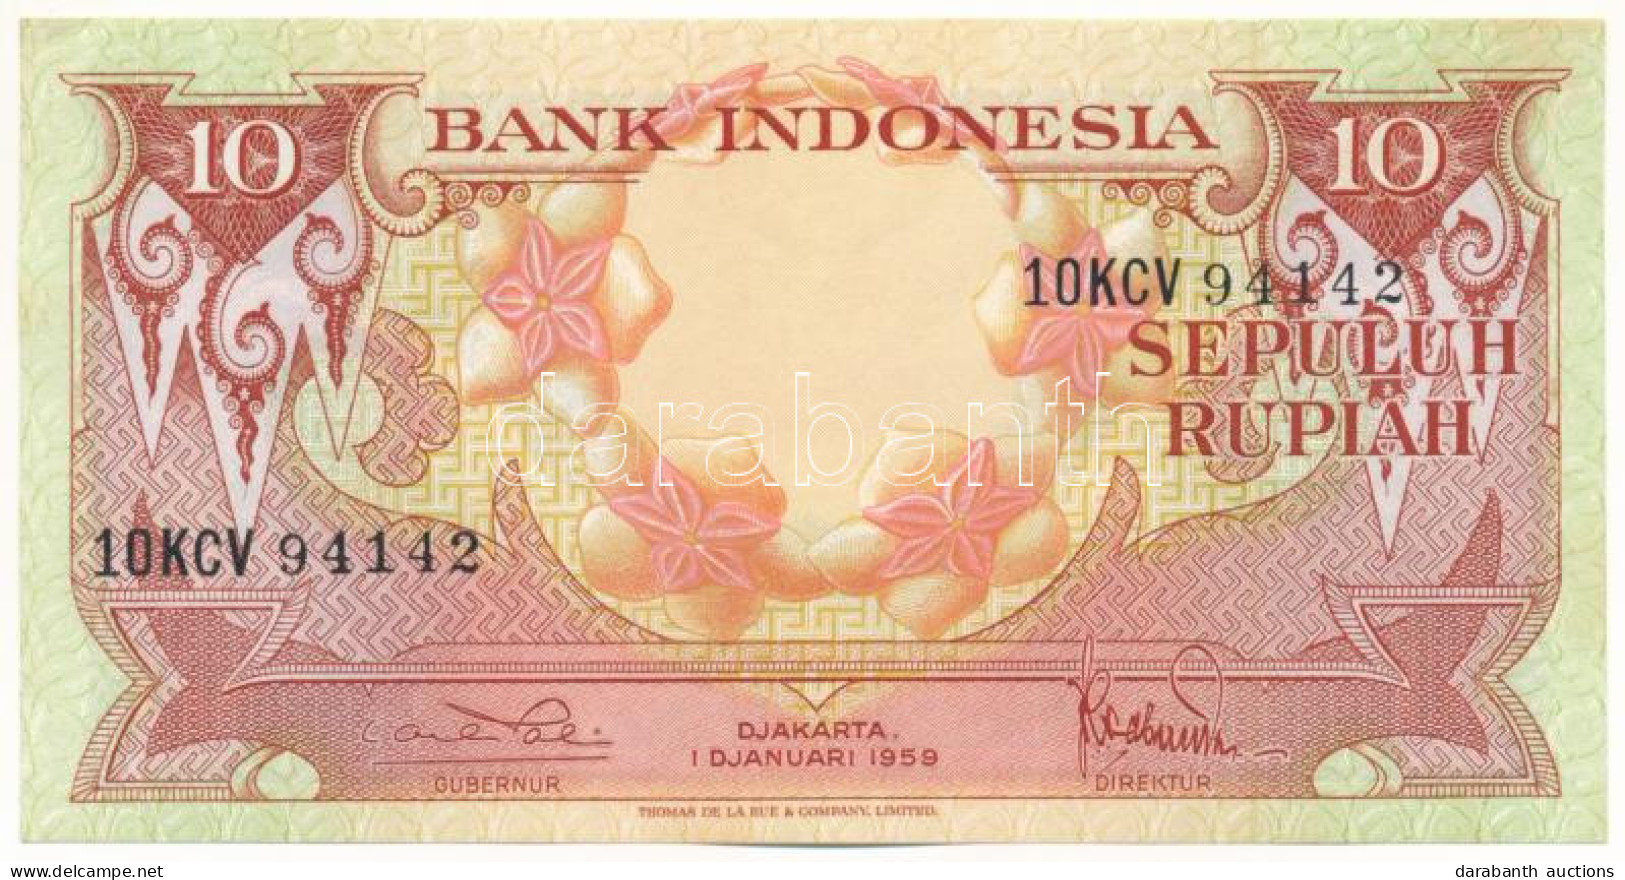 Indonézia 1959. 10R "'10KCV 94142" T:AU  Indonesia 1959. 10 Rupiah "10KCV 94142" C:AU  Krause P#66 - Non Classés